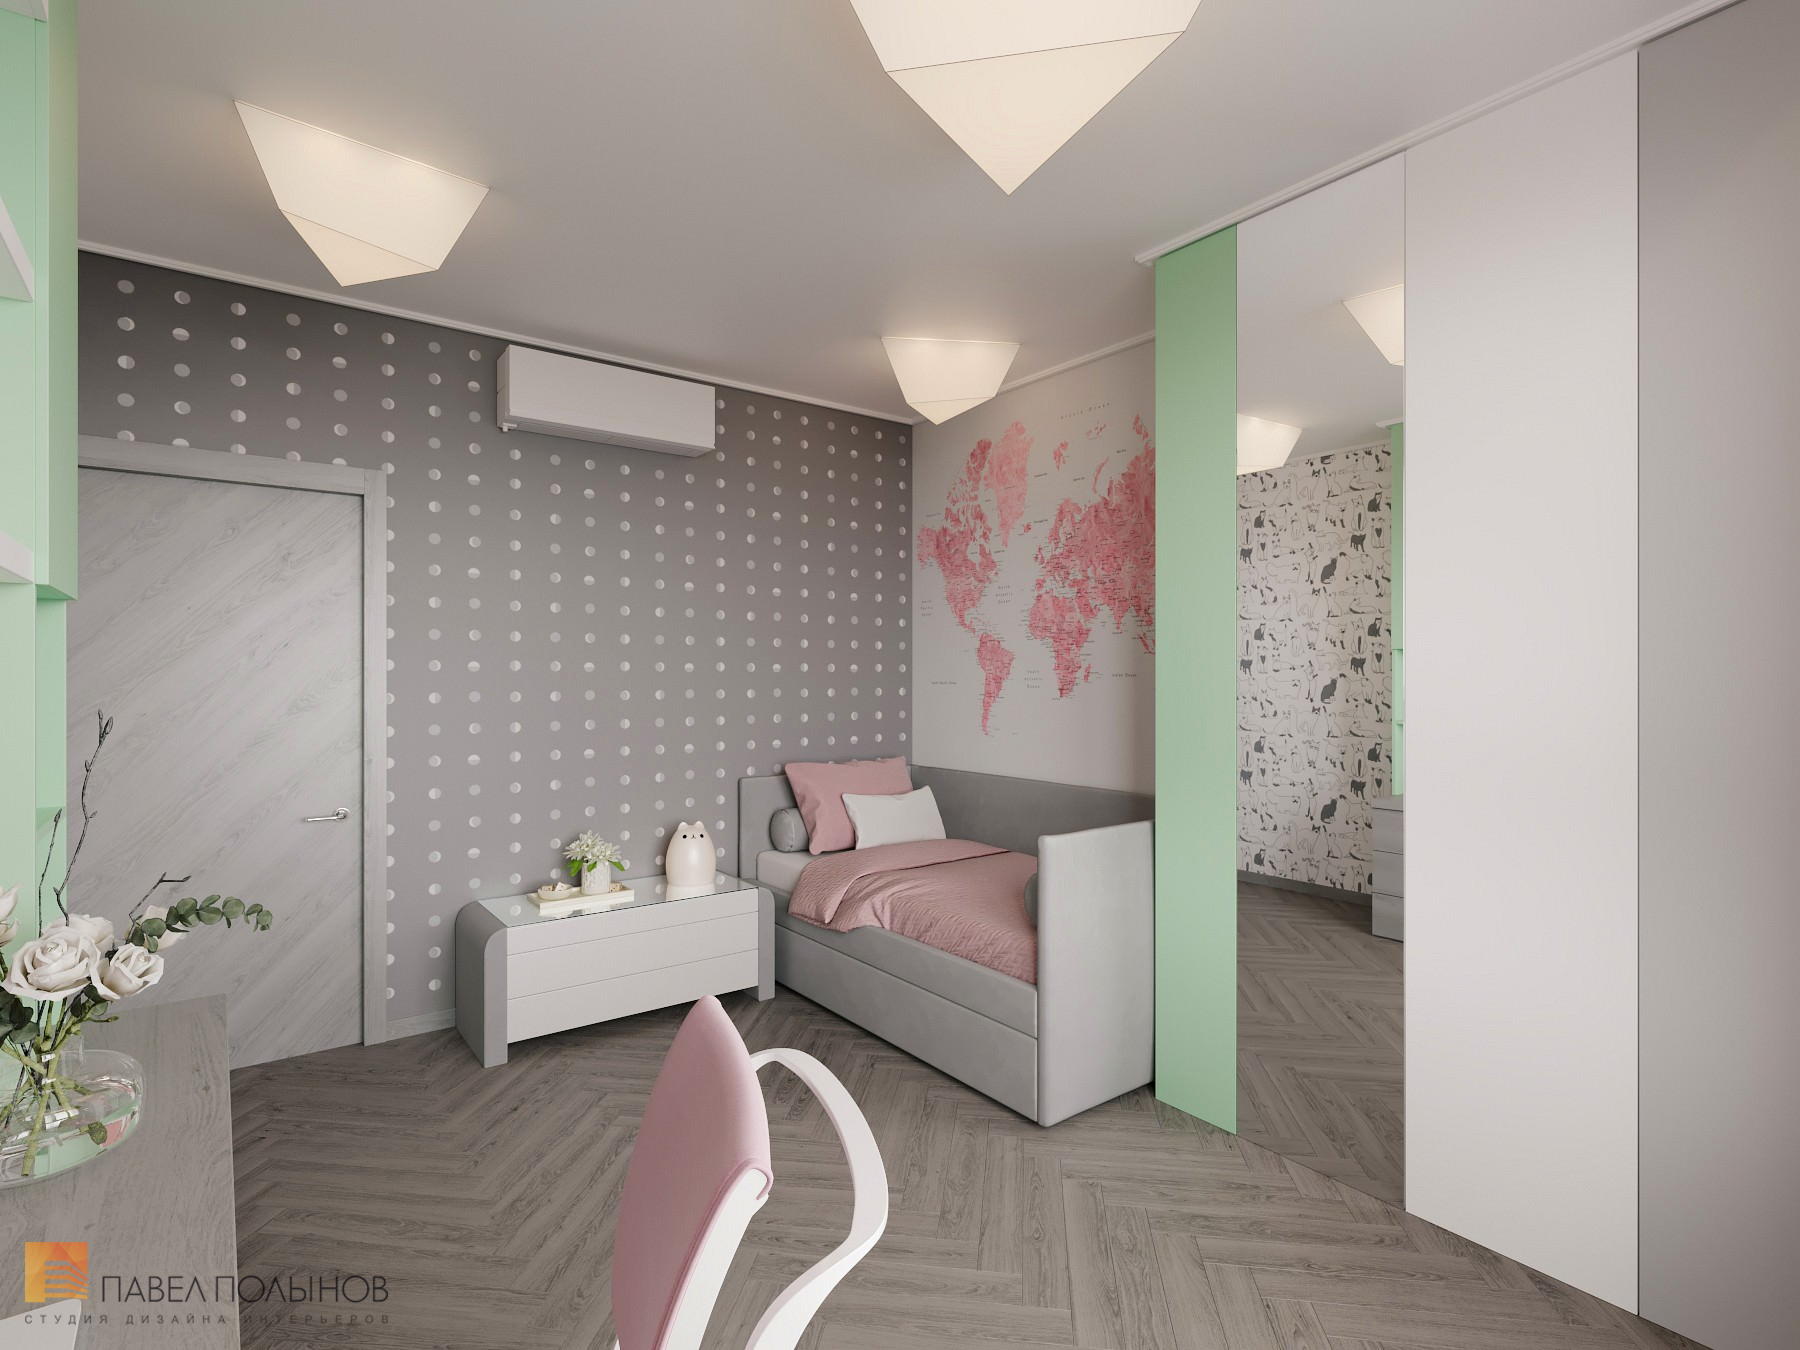 Фото интерьер детской комнаты для девочки из проекта «Интерьер квартиры в скандинавском стиле, ЖК «Silver», 146 кв.м.»